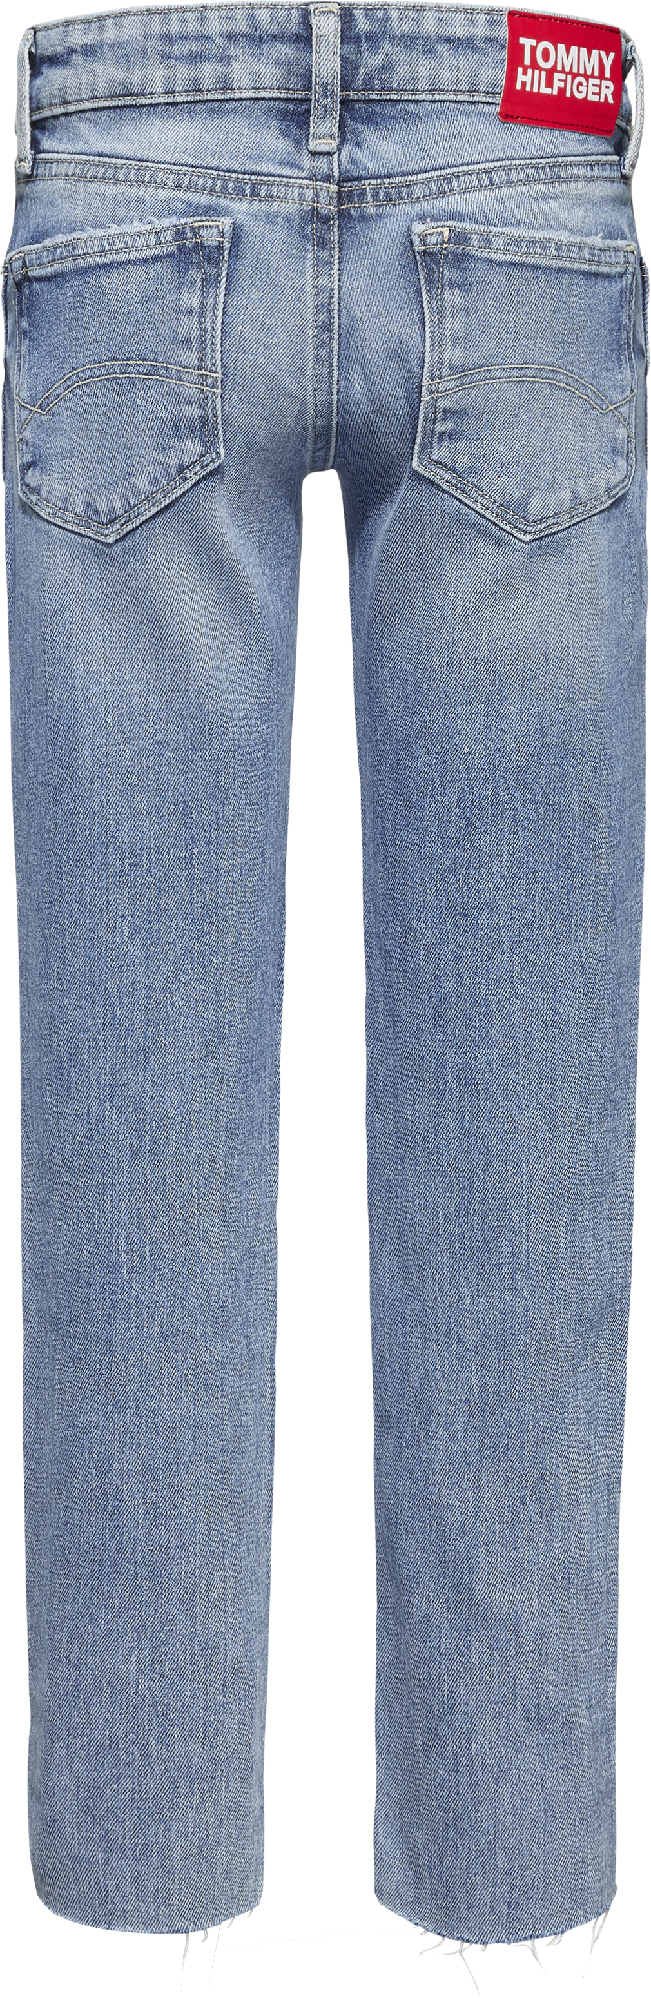 Tommy Hilfiger Nora Lt blue Jeans